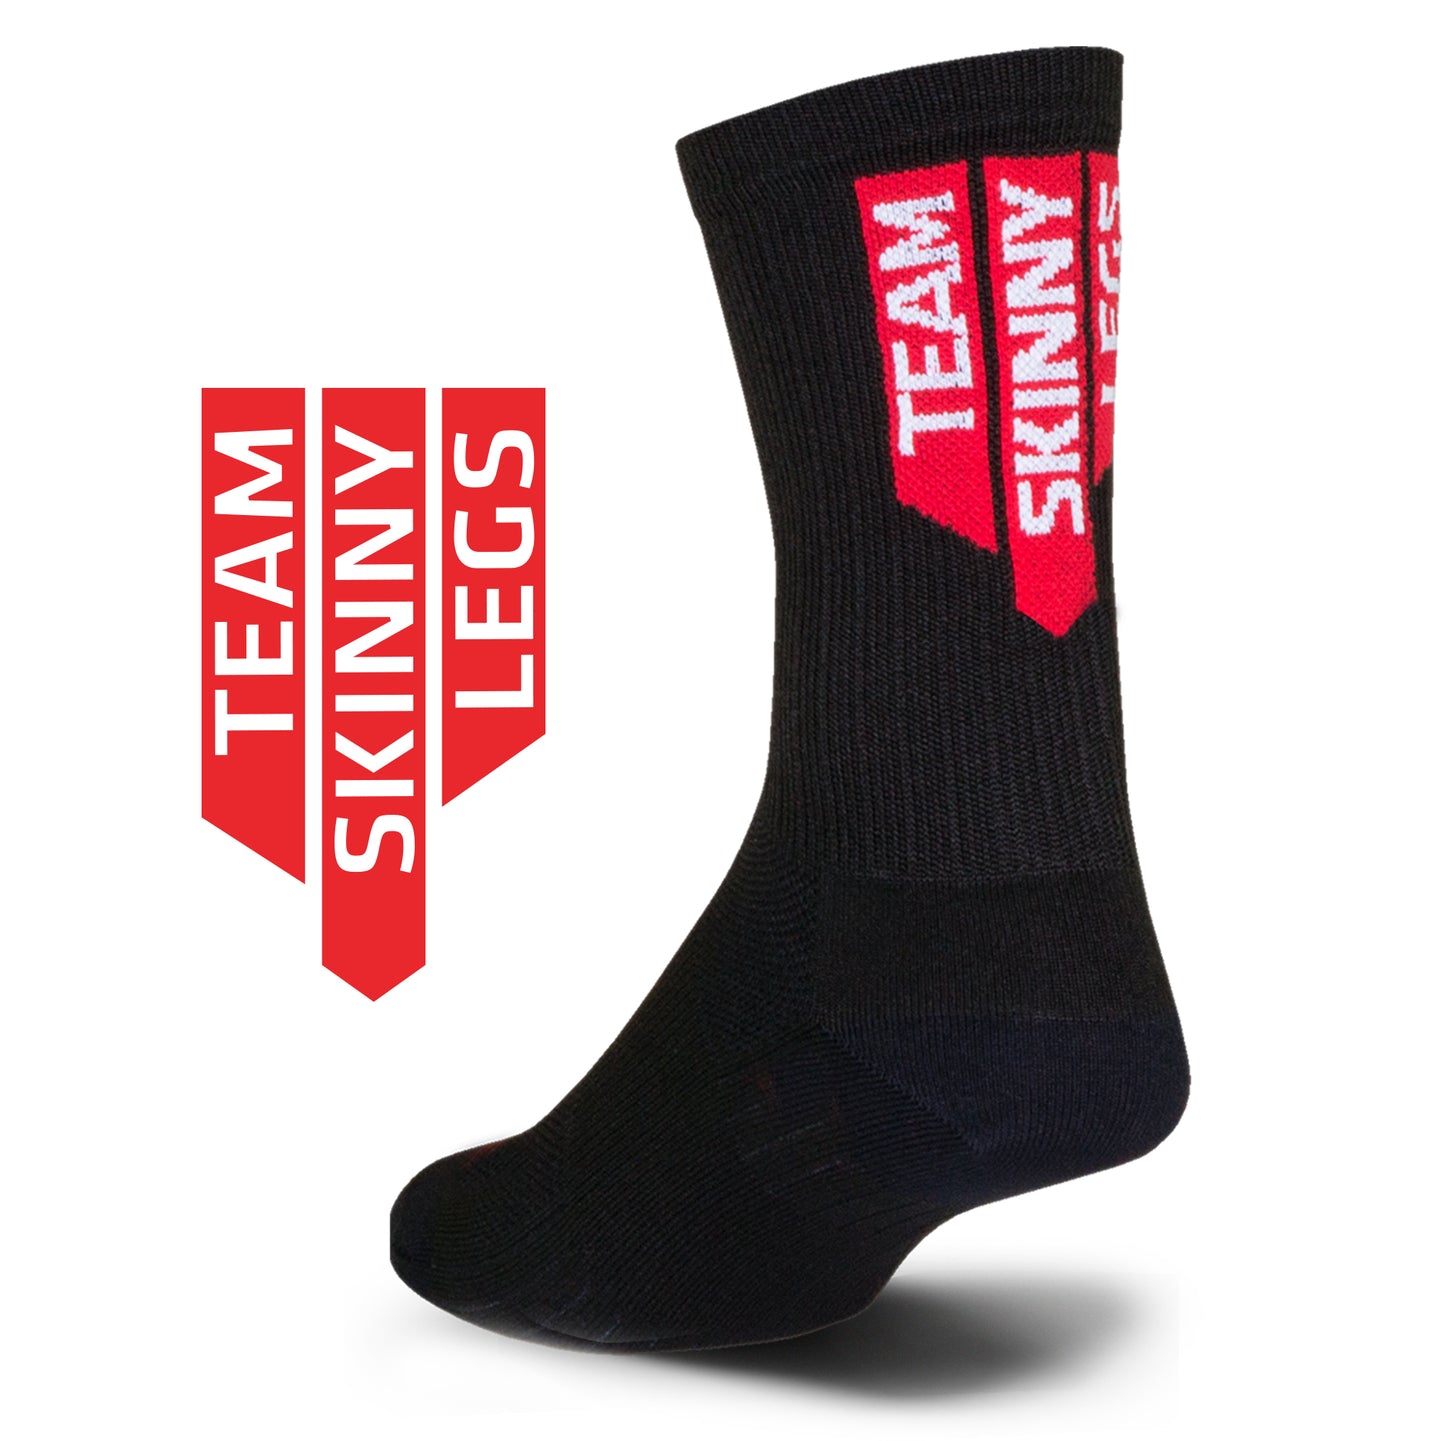 TSL Socks - 6" RED